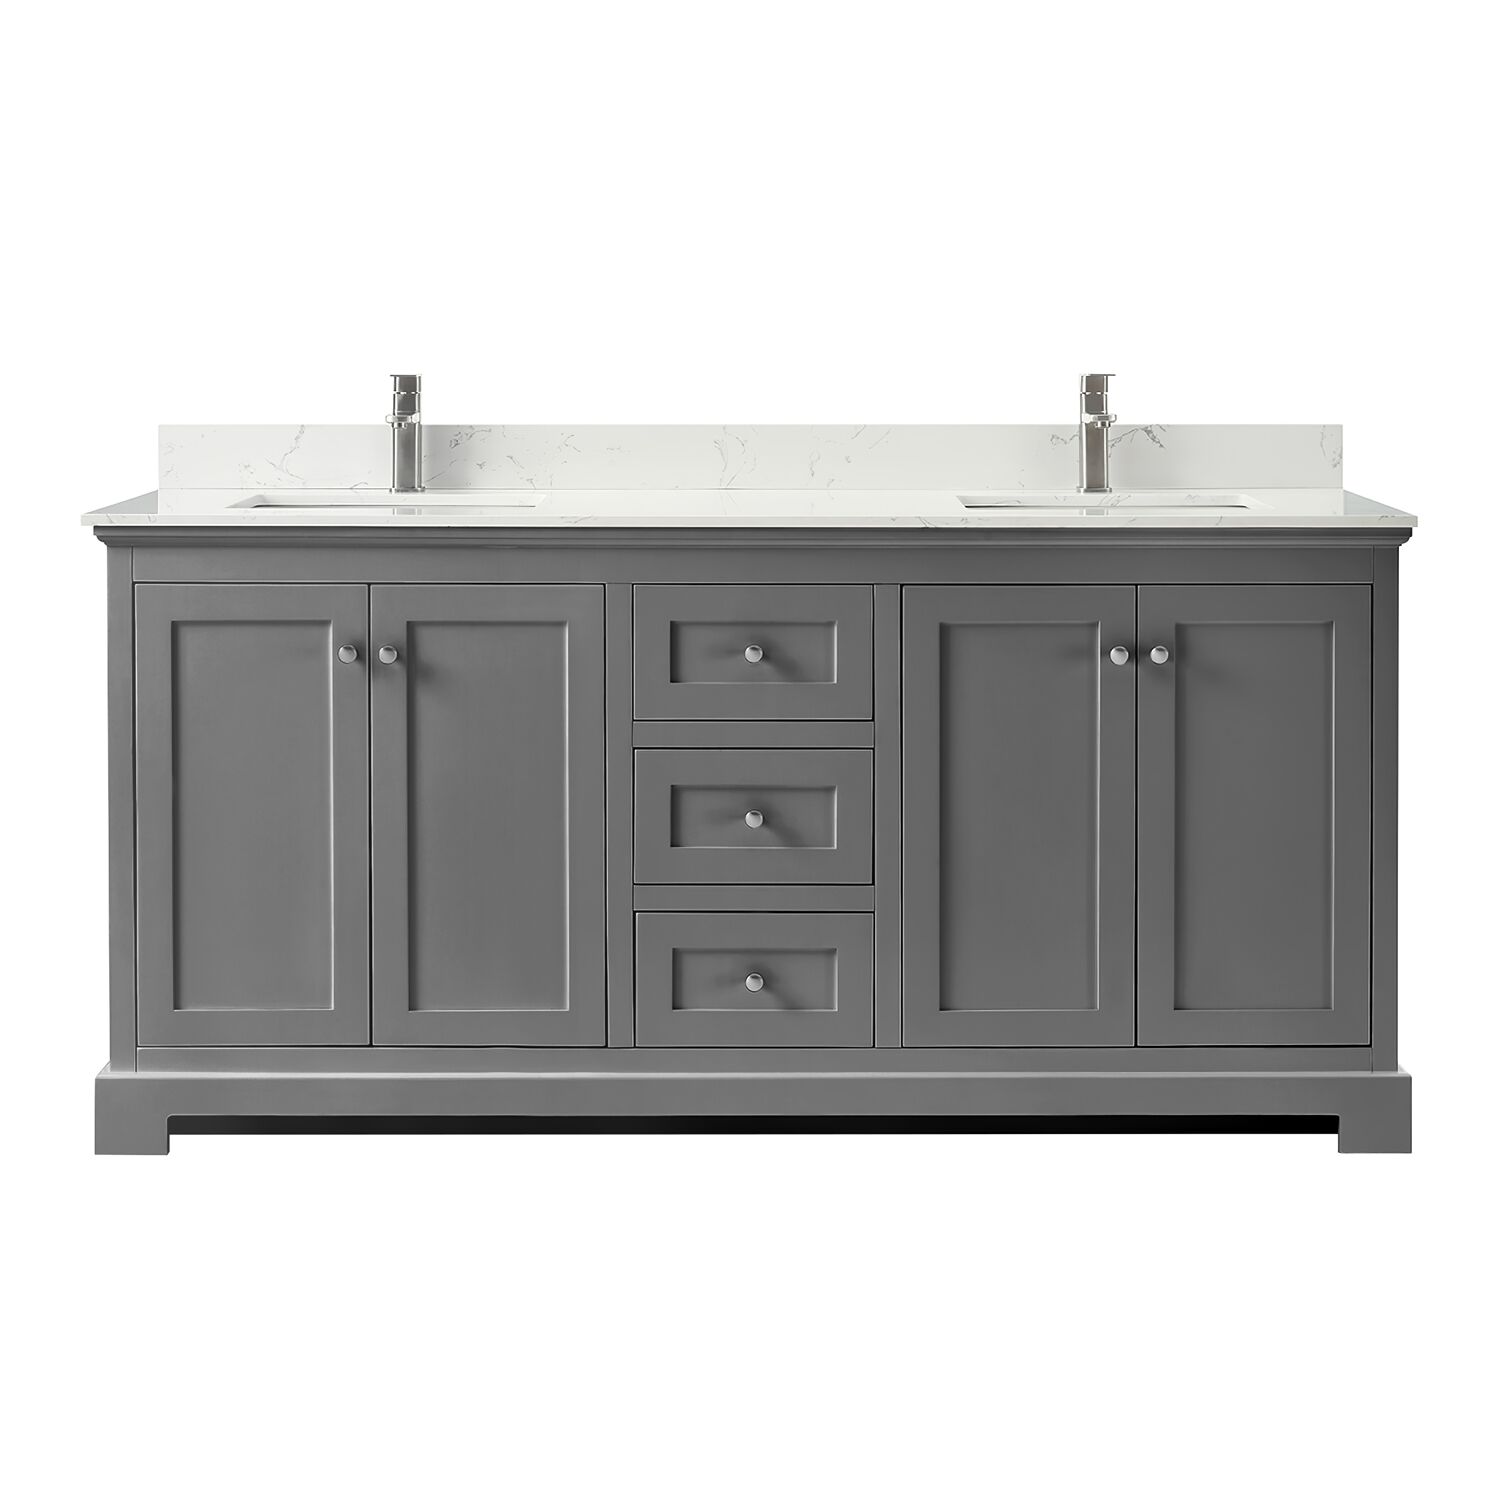 72" Double Bathroom Vanity in Dark Gray, Carrara Cultured Marble Countertop, Undermount Square Sinks, No Mirror